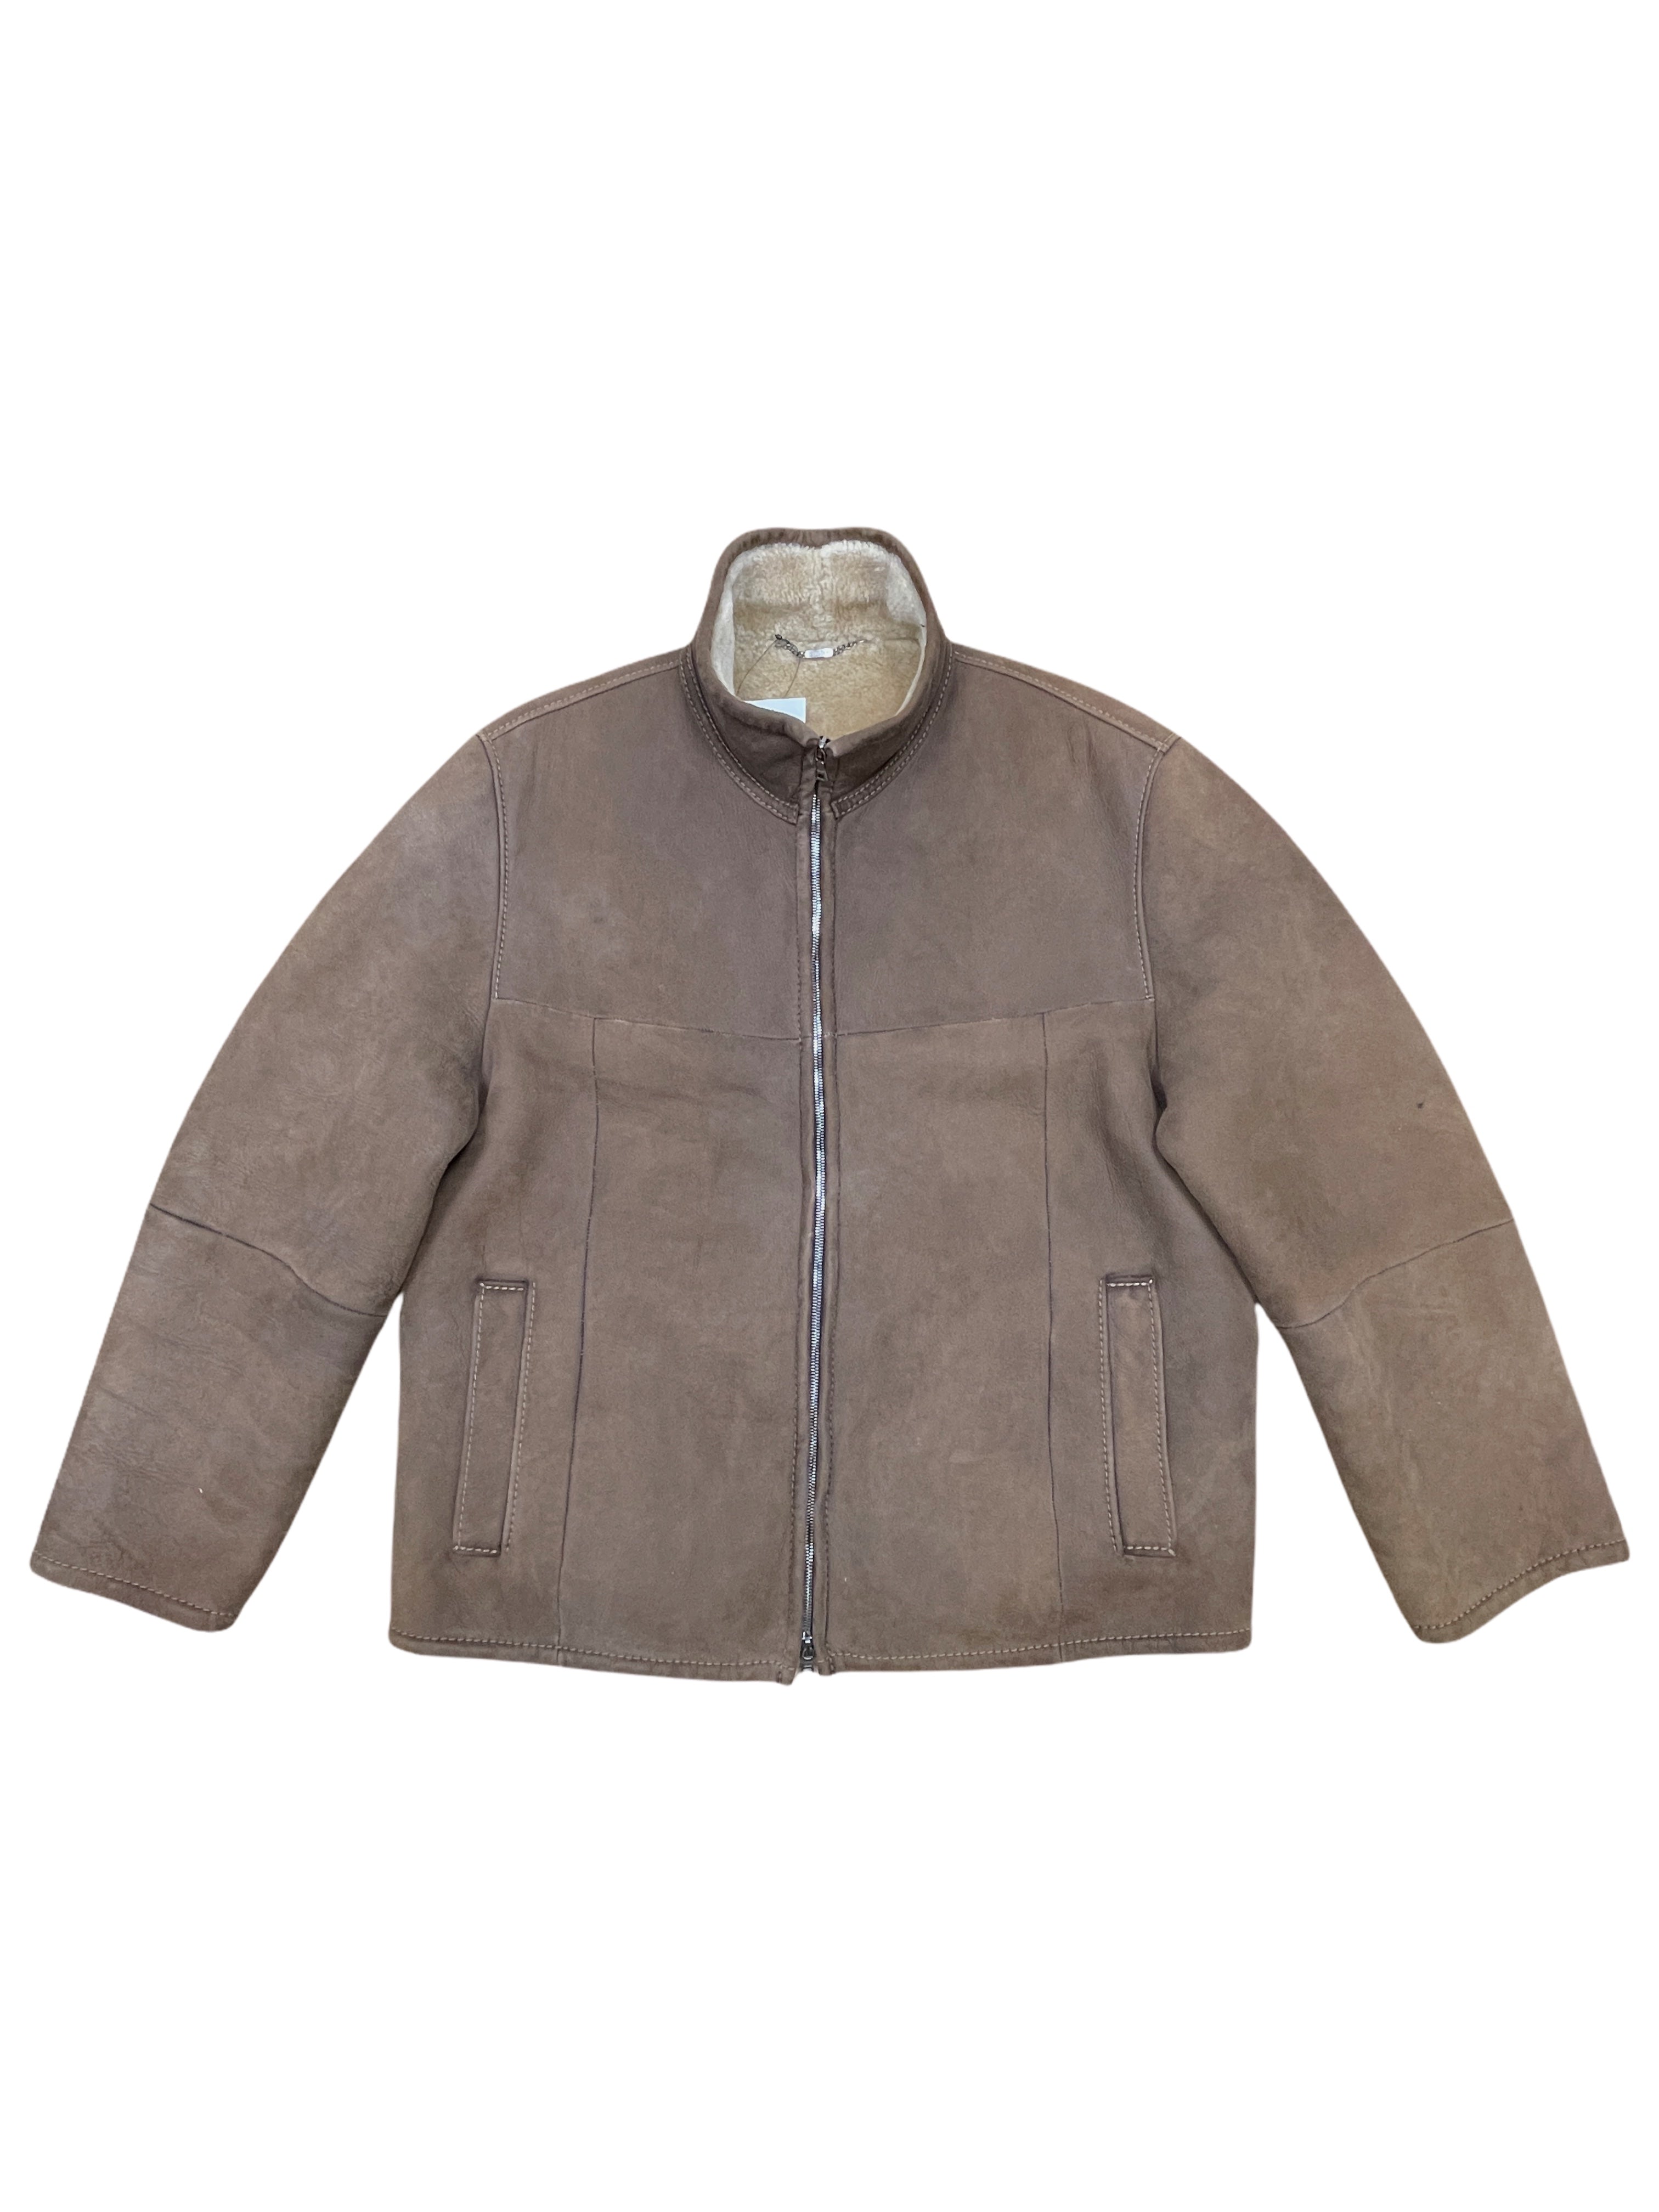 Werner Christ Brown Sheepskin Shearling Leather Bomber Jacket